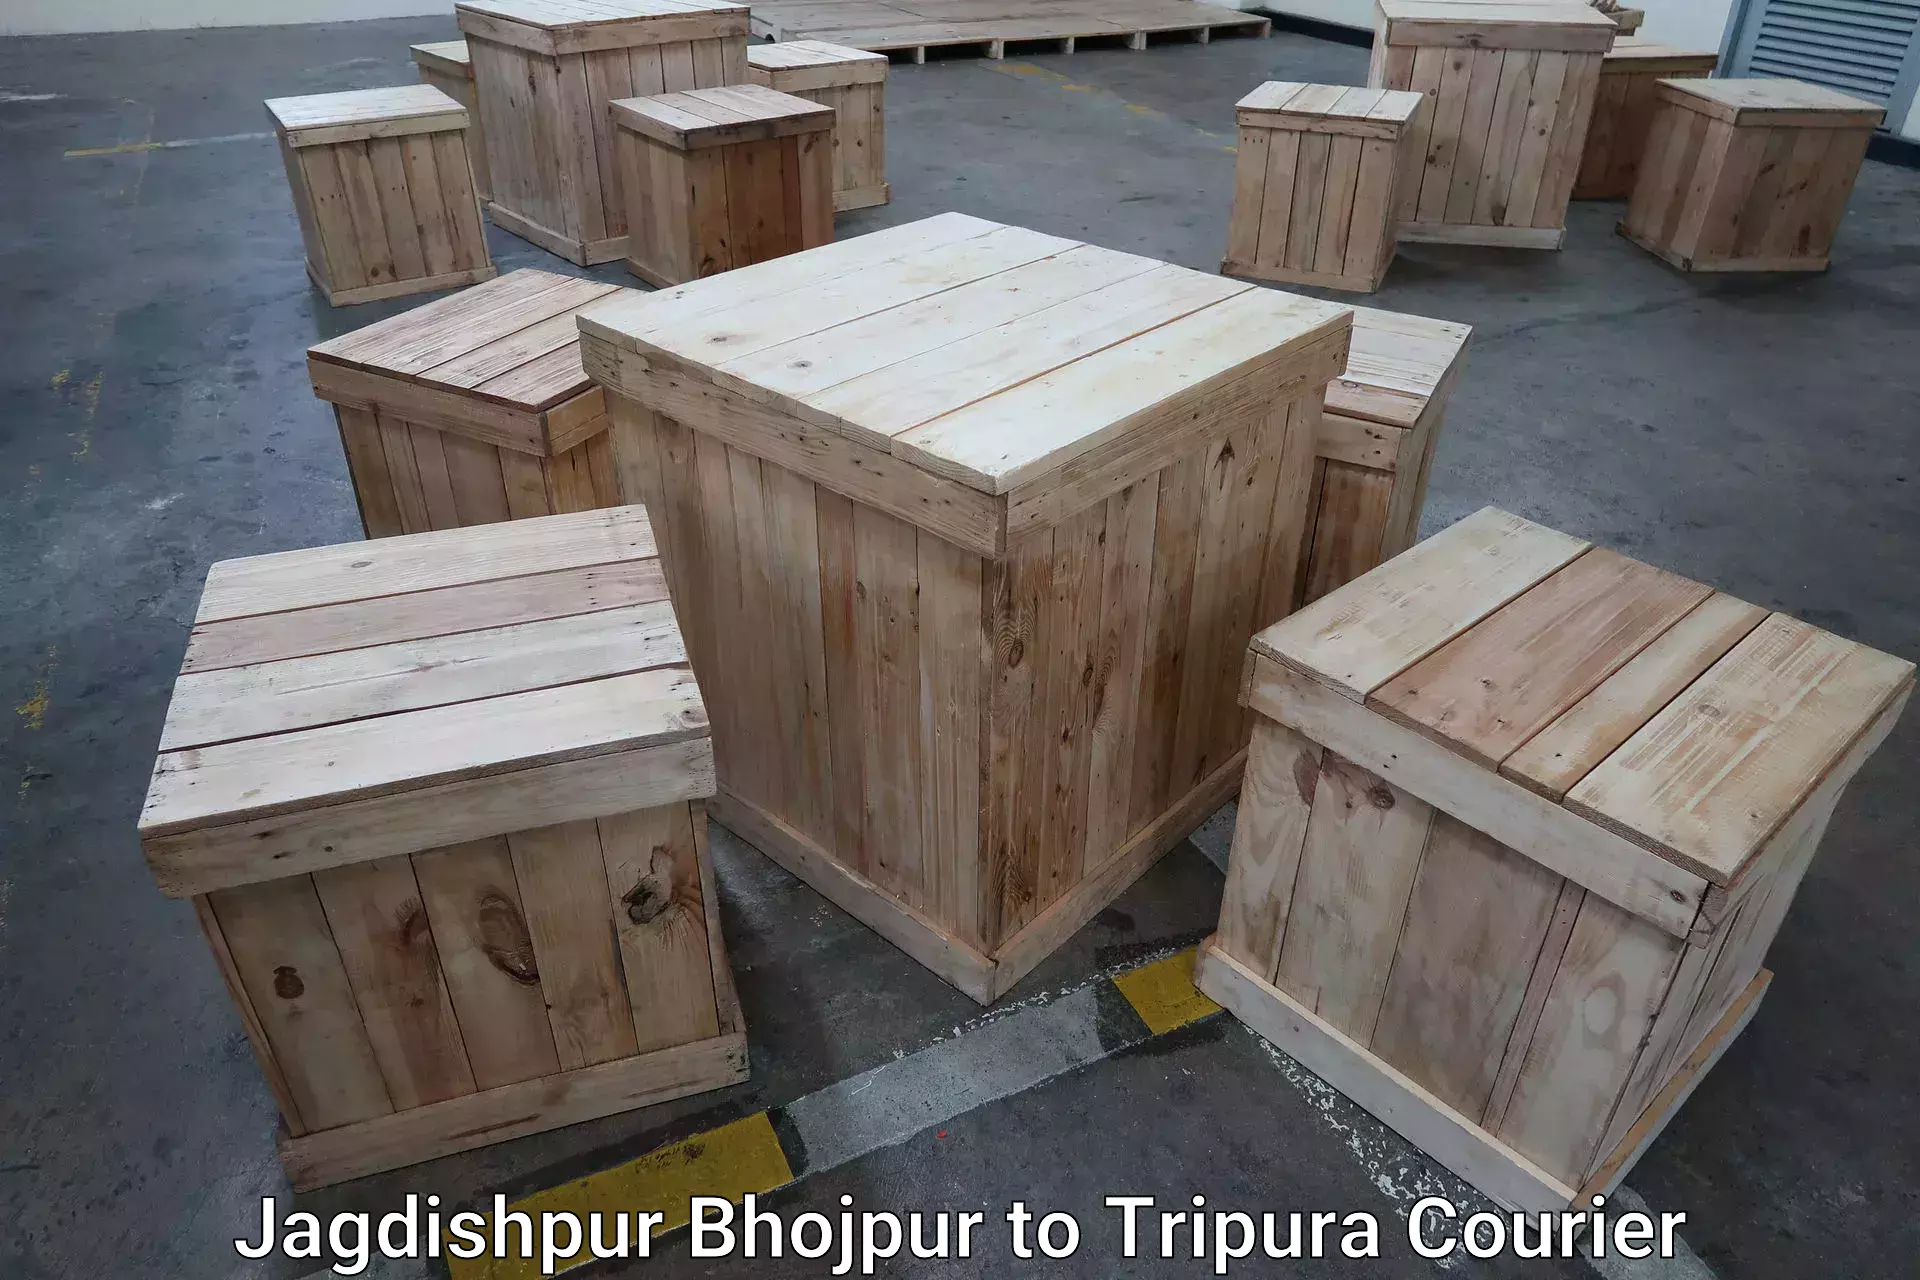 Discounted baggage transport in Jagdishpur Bhojpur to IIIT Agartala